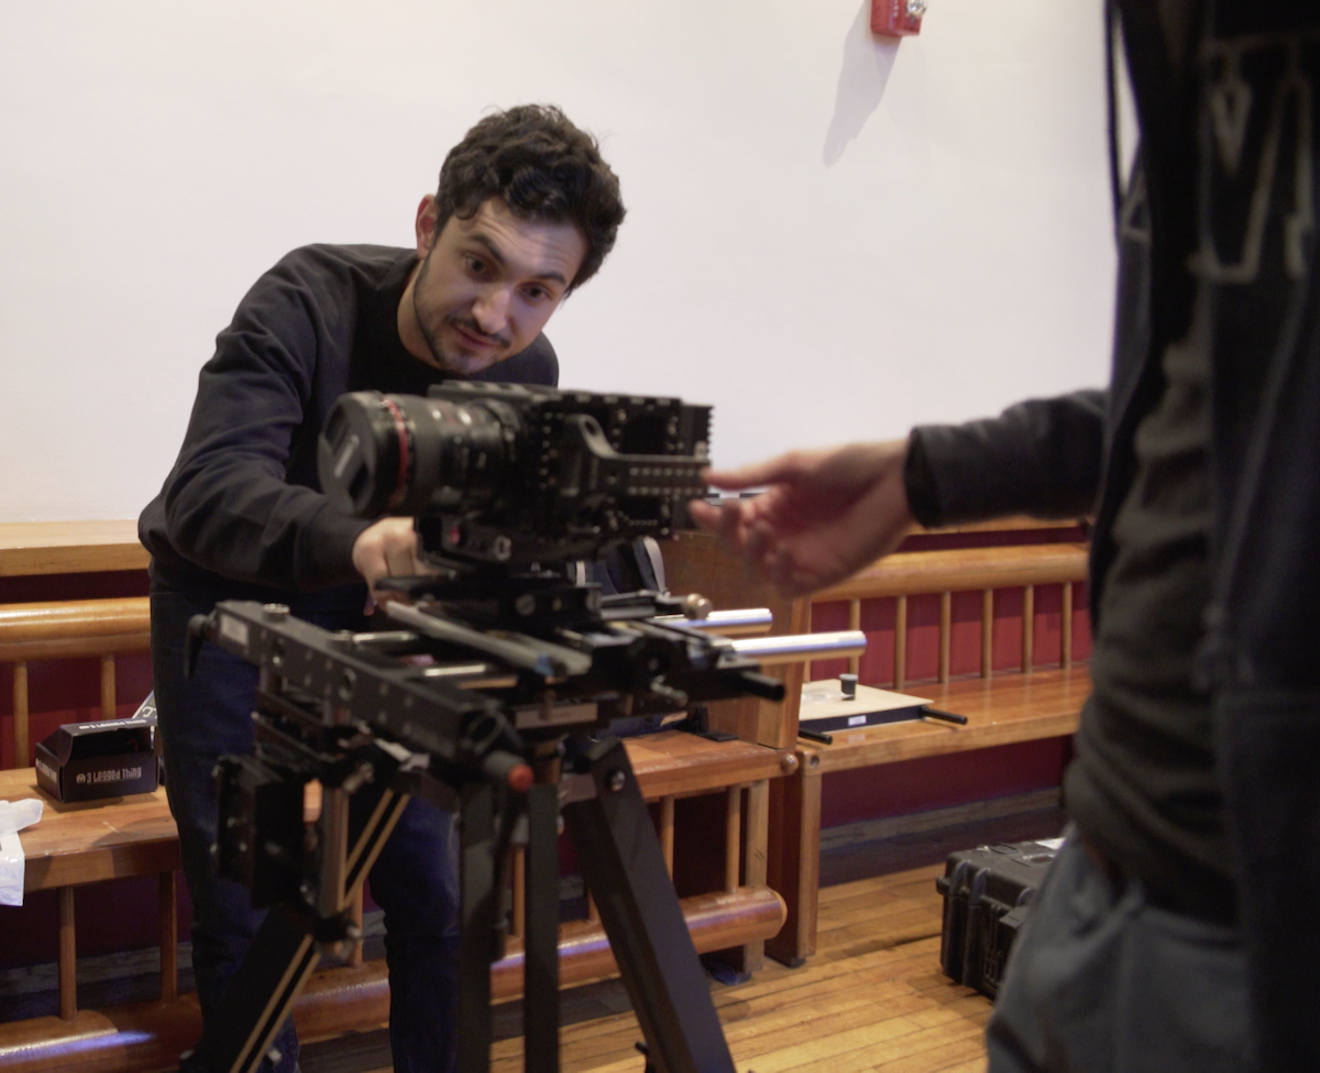 Romain Vak setting up a 3-D camera rig.